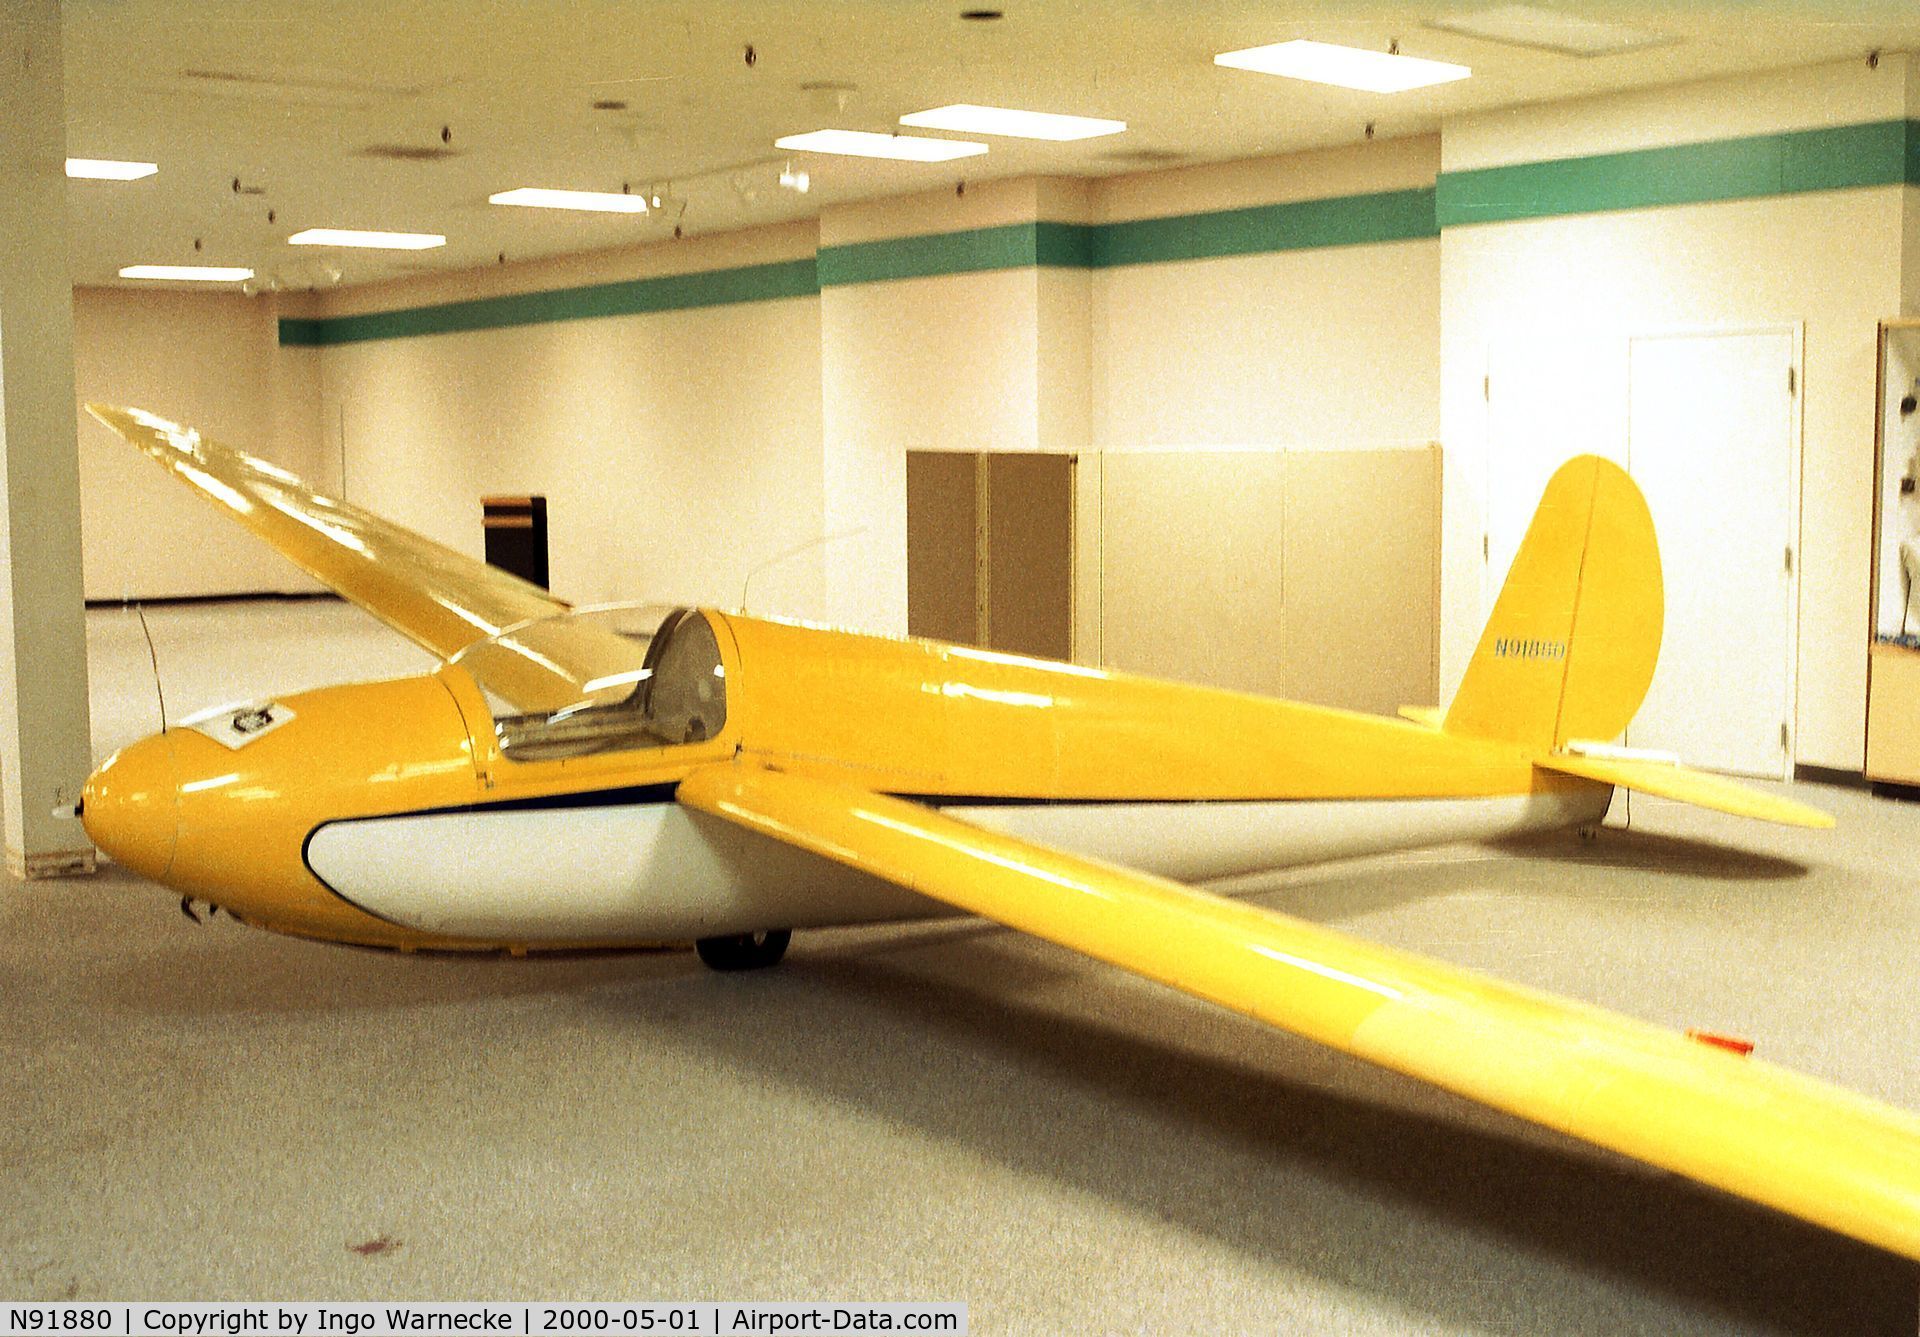 N91880, 1952 Schweizer SGS 1-23B C/N 17, Schweizer SGS 1-23B at the Niagara Aerospace Museum, Niagara Falls NY